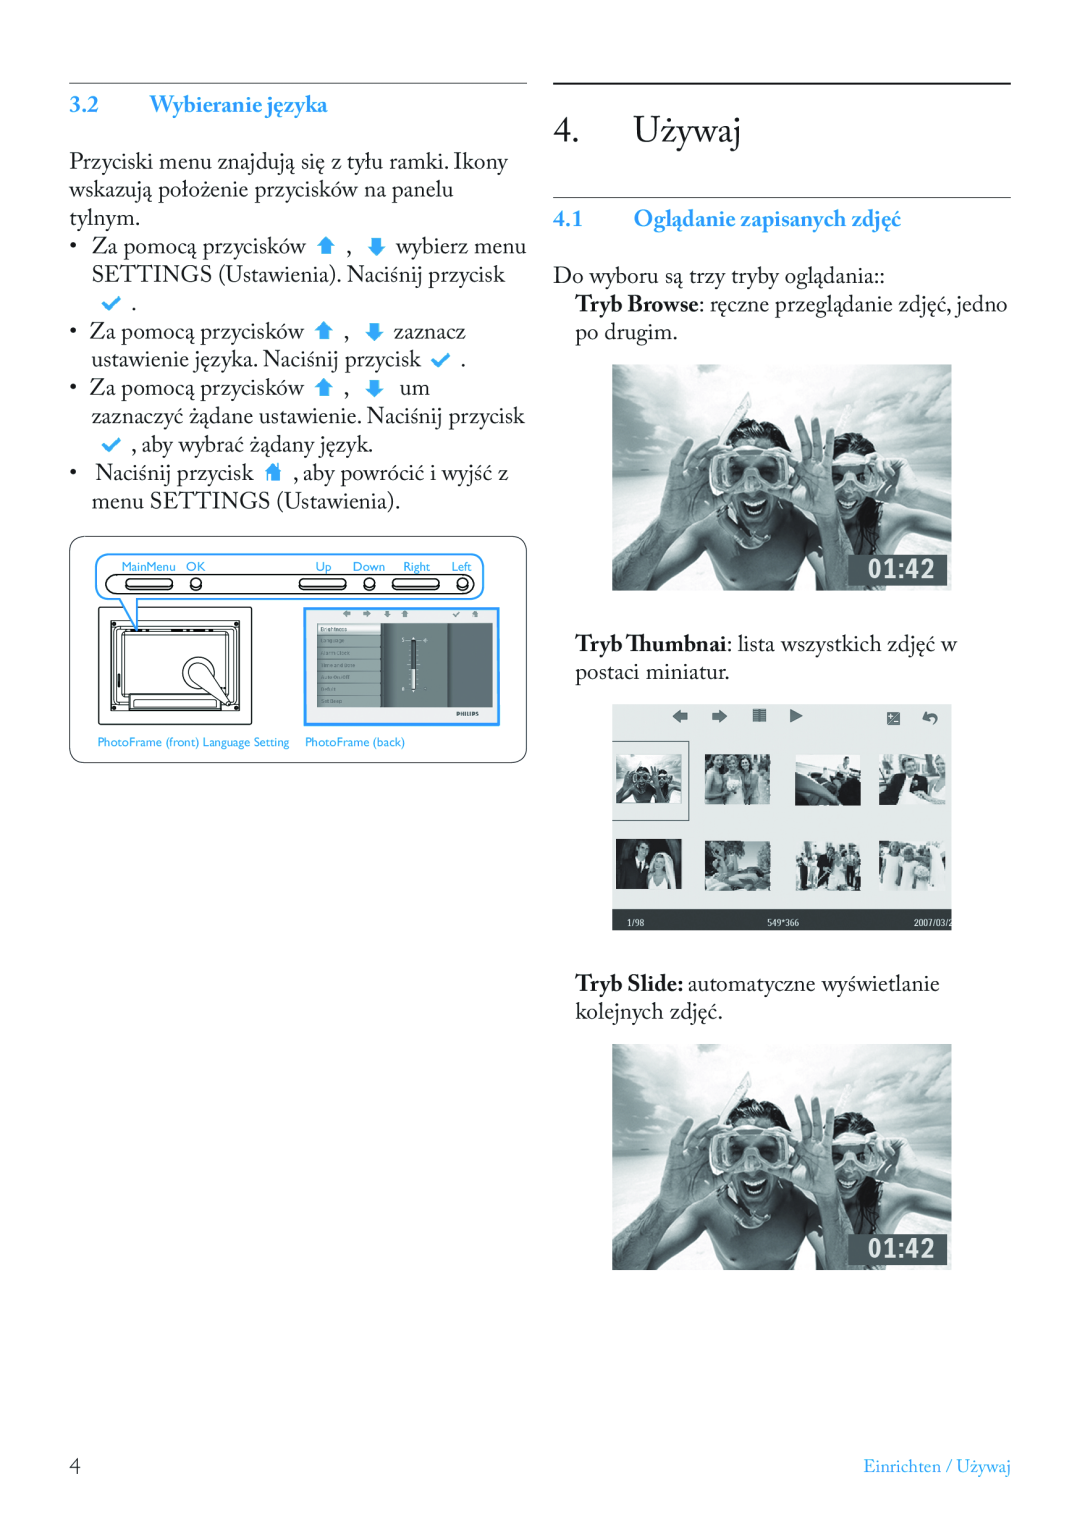 Philips 7FF2FPAS manual 4. Używaj, Wybieranie języka, 4.1 Oglądanie zapisanych zdjęć 